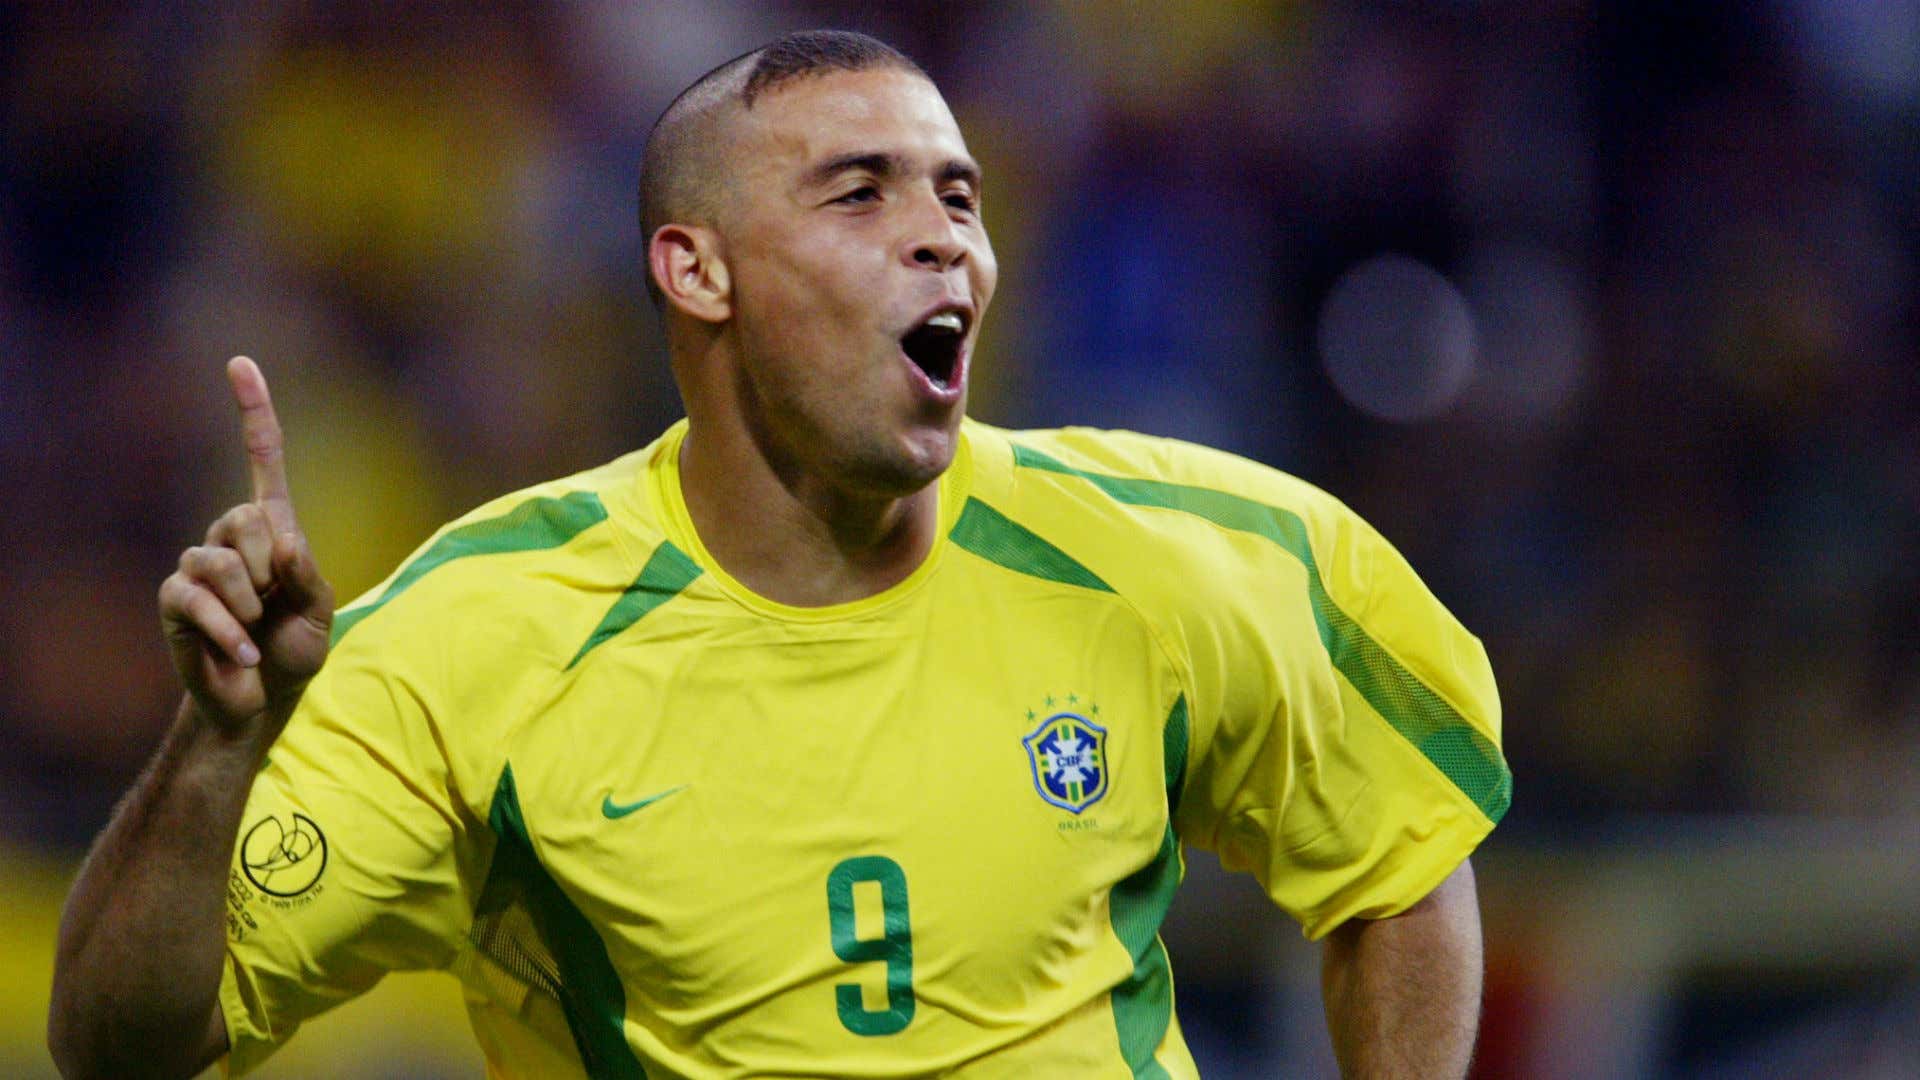 Ronaldo Brazil 2002